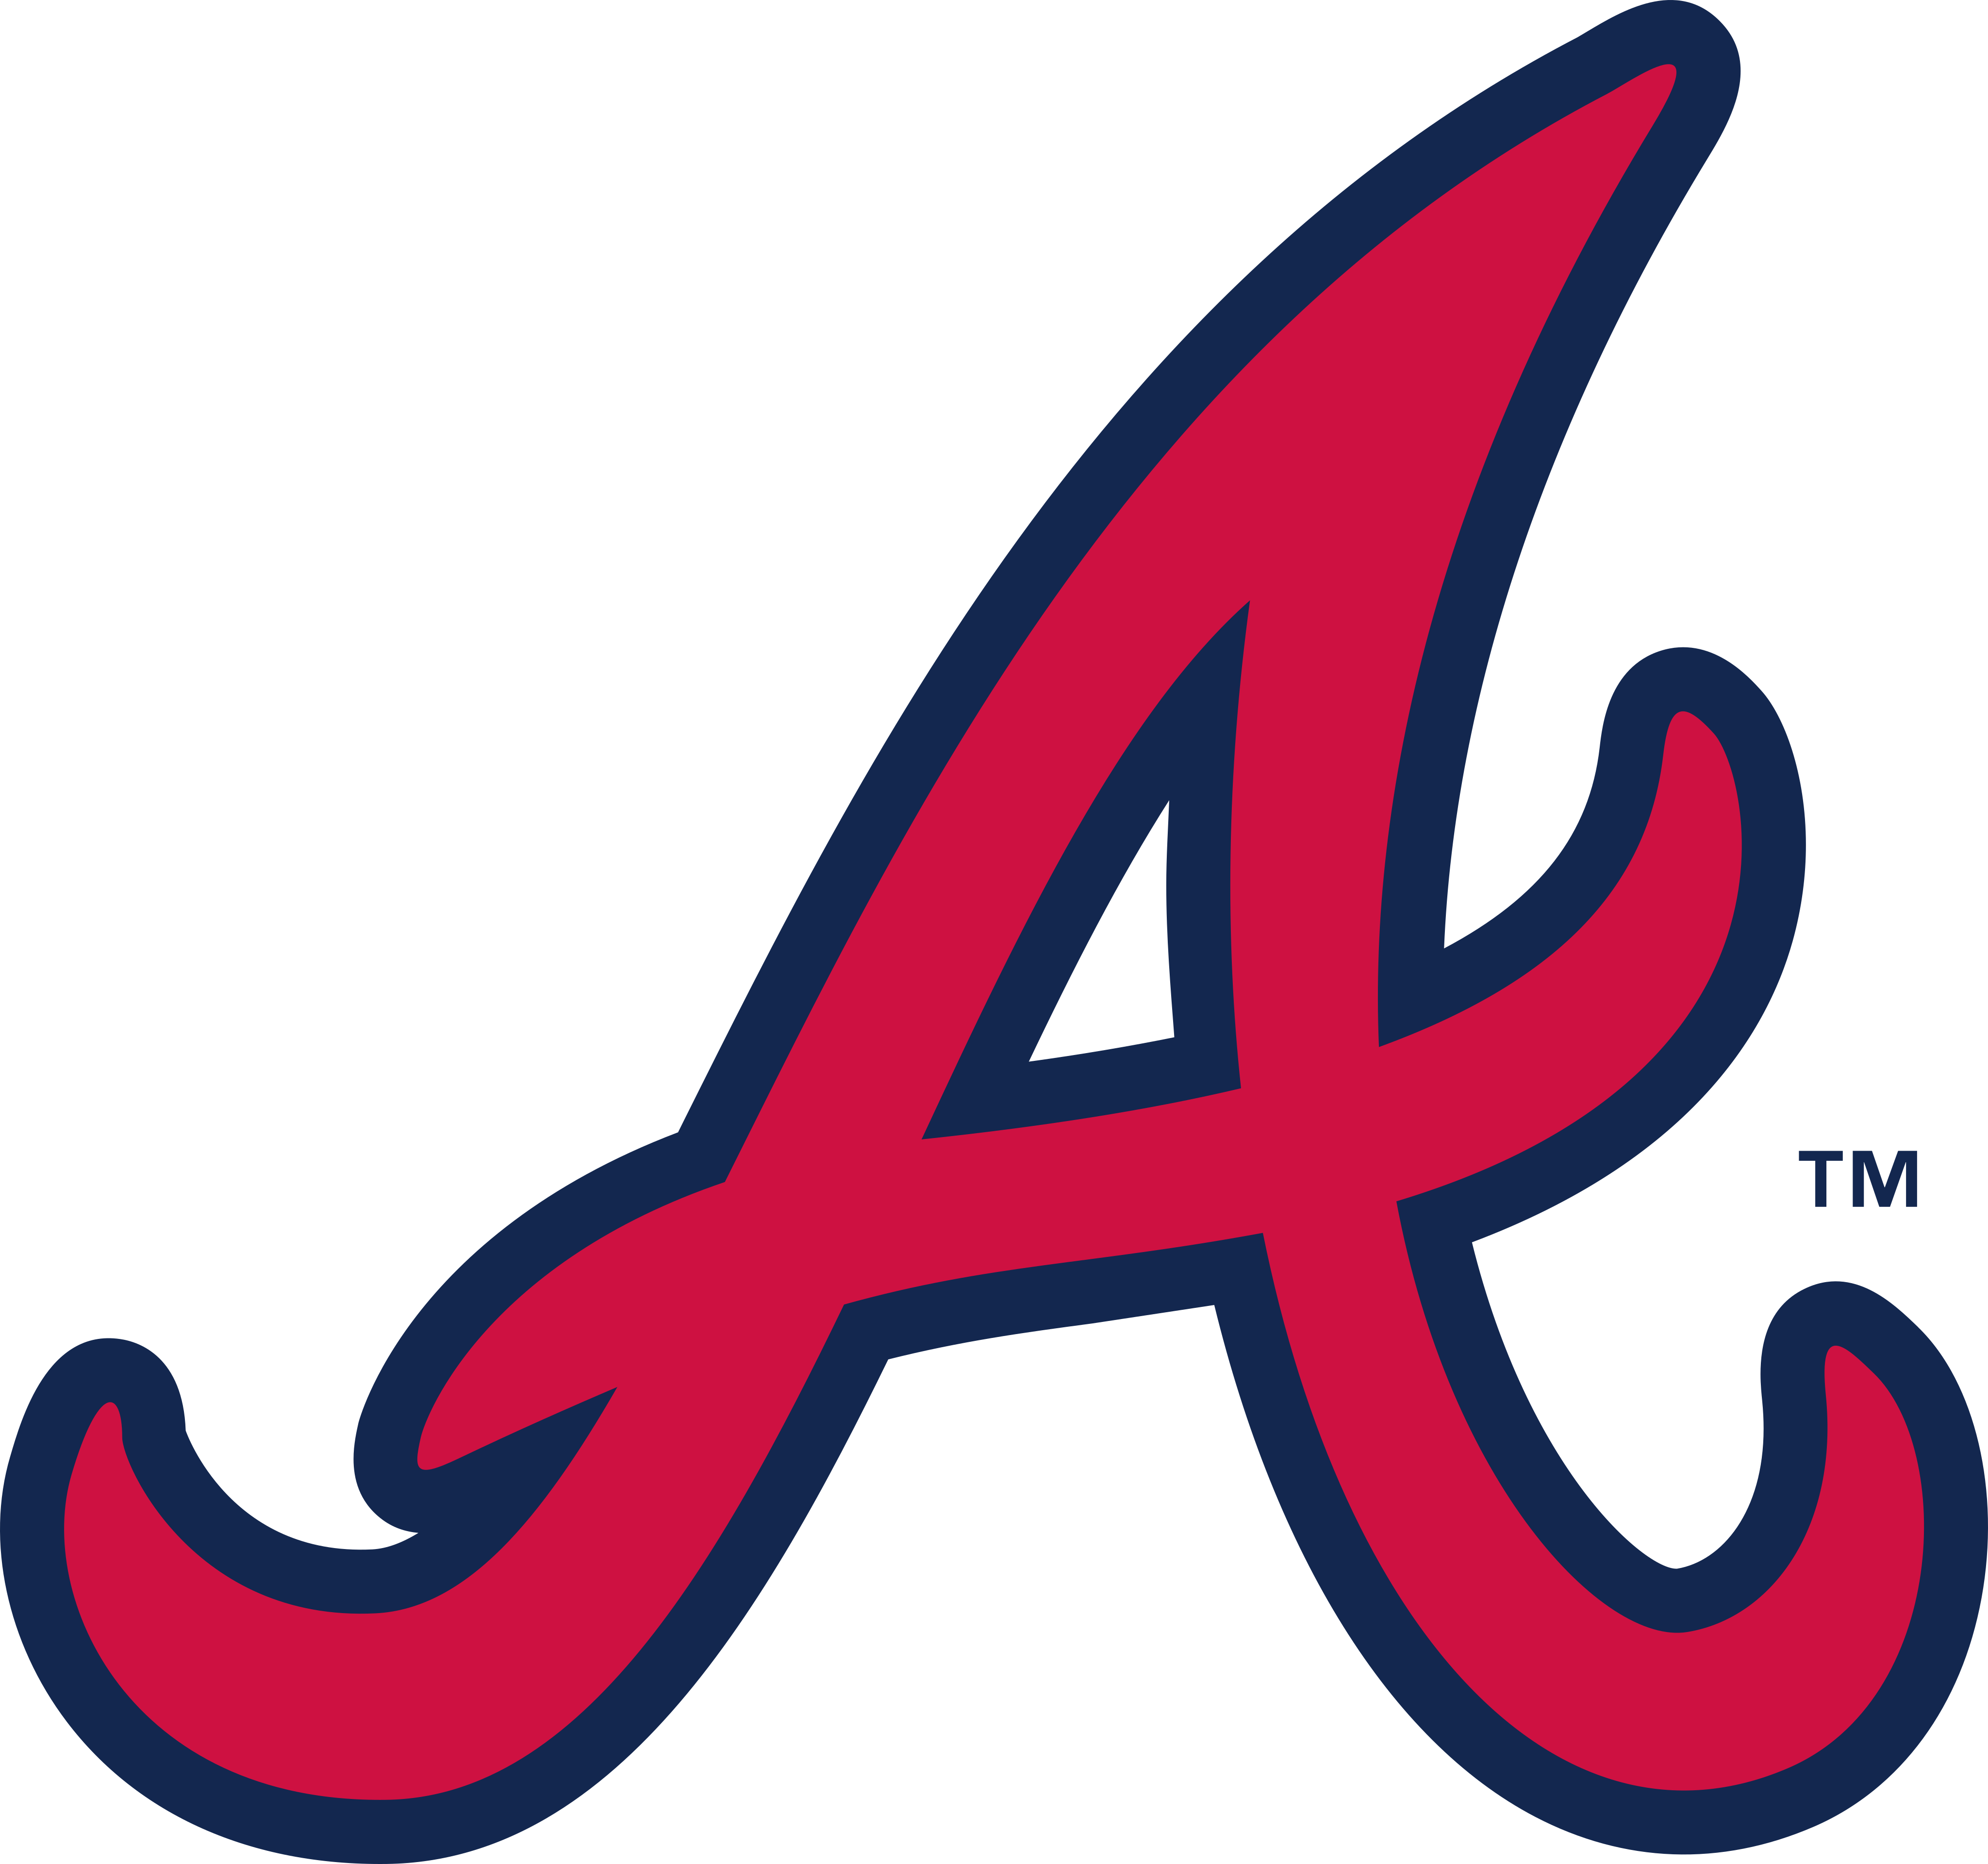 Atlanta Braves PNG - Atlanta Braves Tomahawk, Atlanta Braves